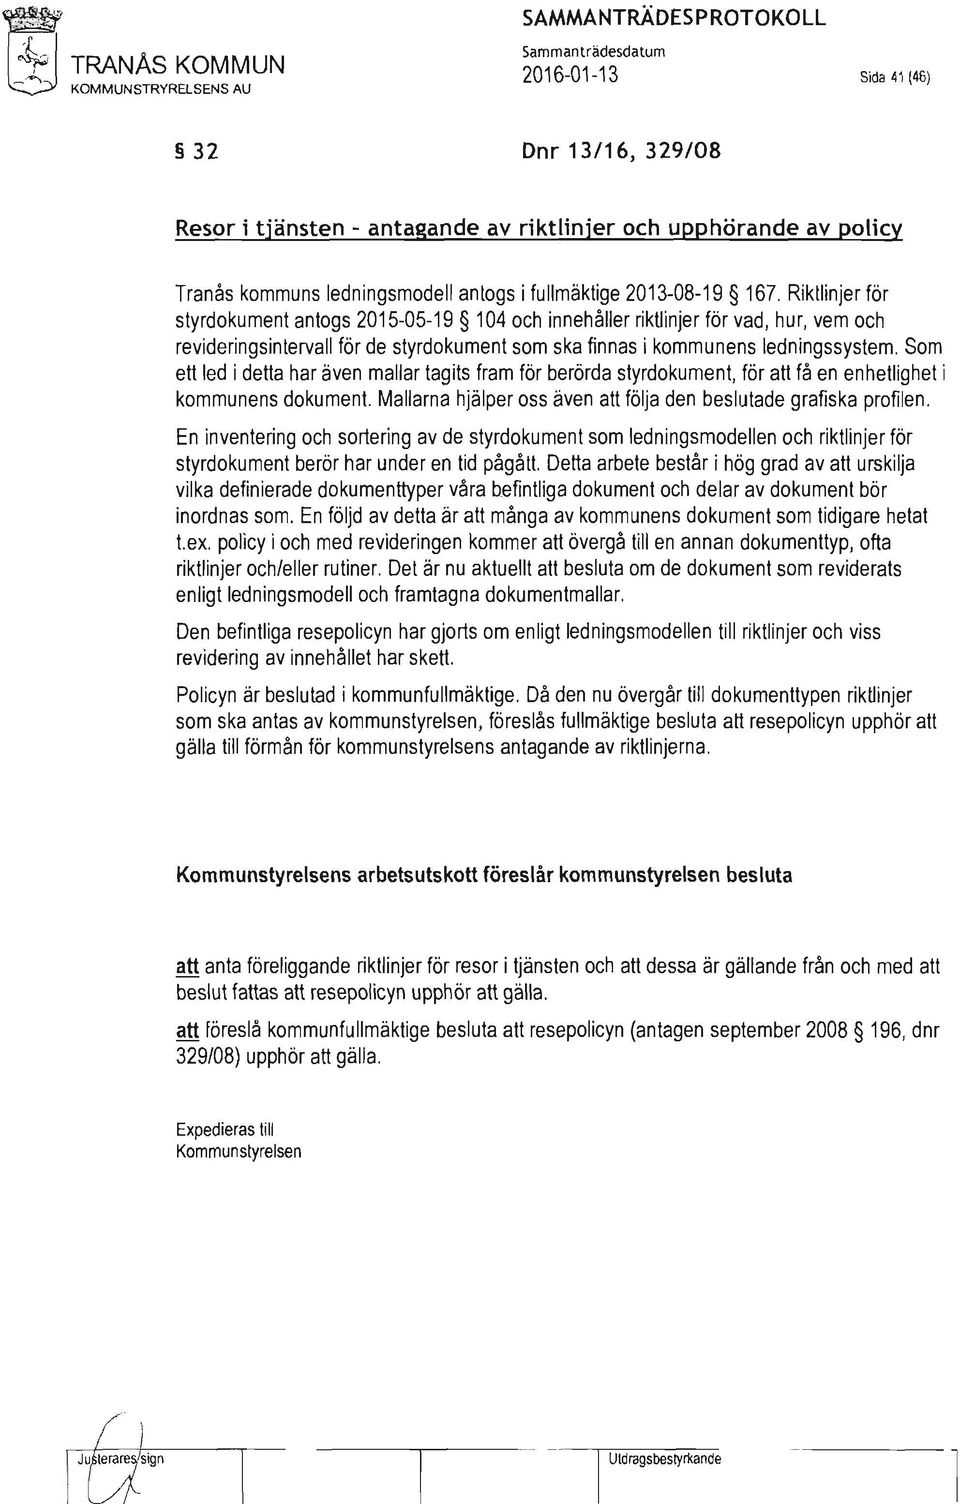 Tranås kommuns ledningsmodell anlogs i fullmäktige 2013-08-19 167.